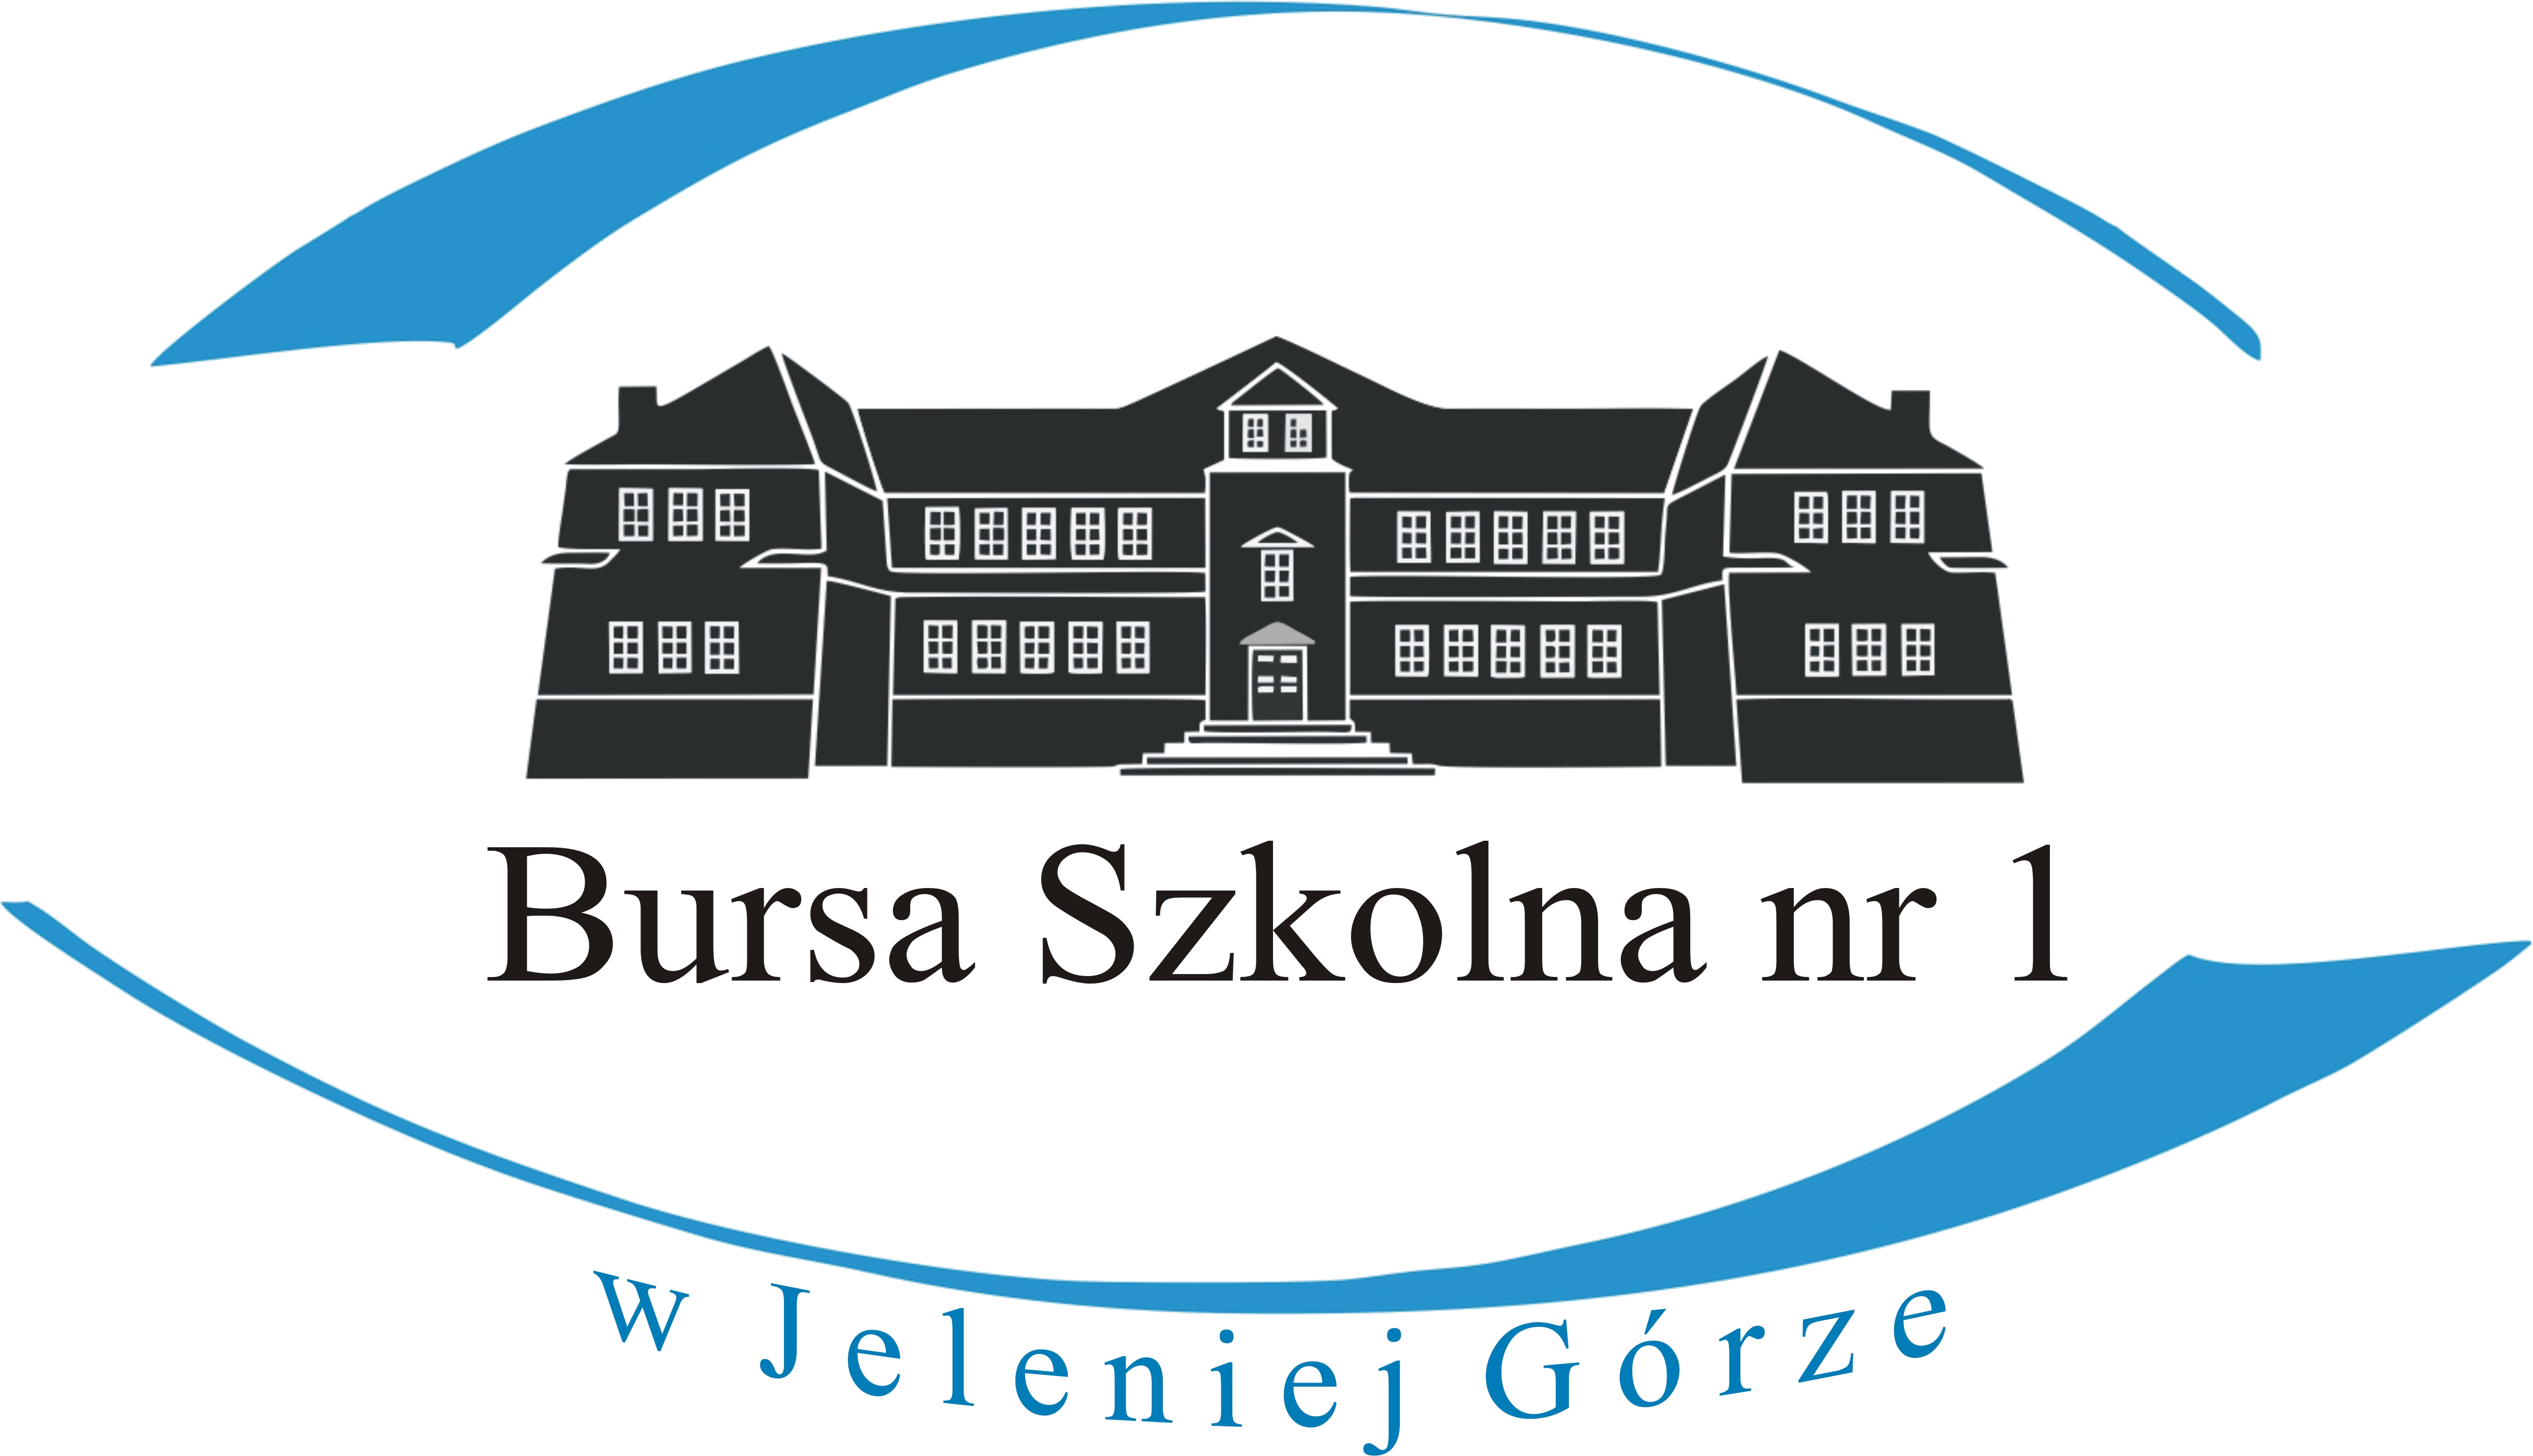 Bursa Szkolna nr 1 w Jeleniej Górze Logo logotyp